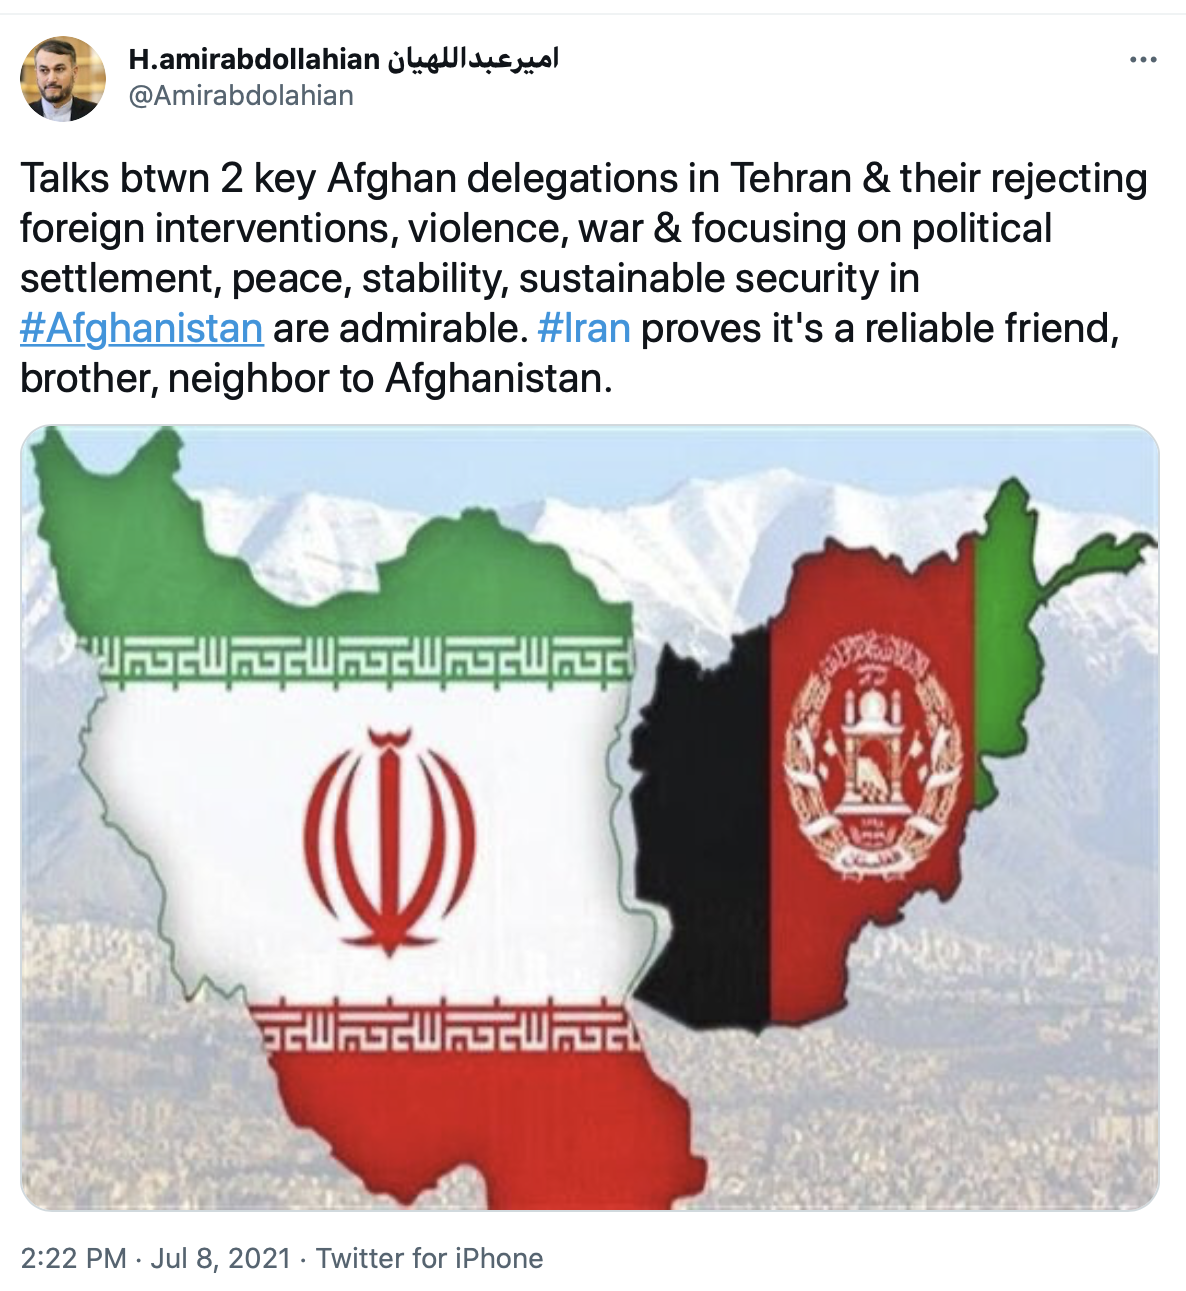 امیر عبدالهیان: ایران دوست و همسایه قابل اعتماد افغانستان است